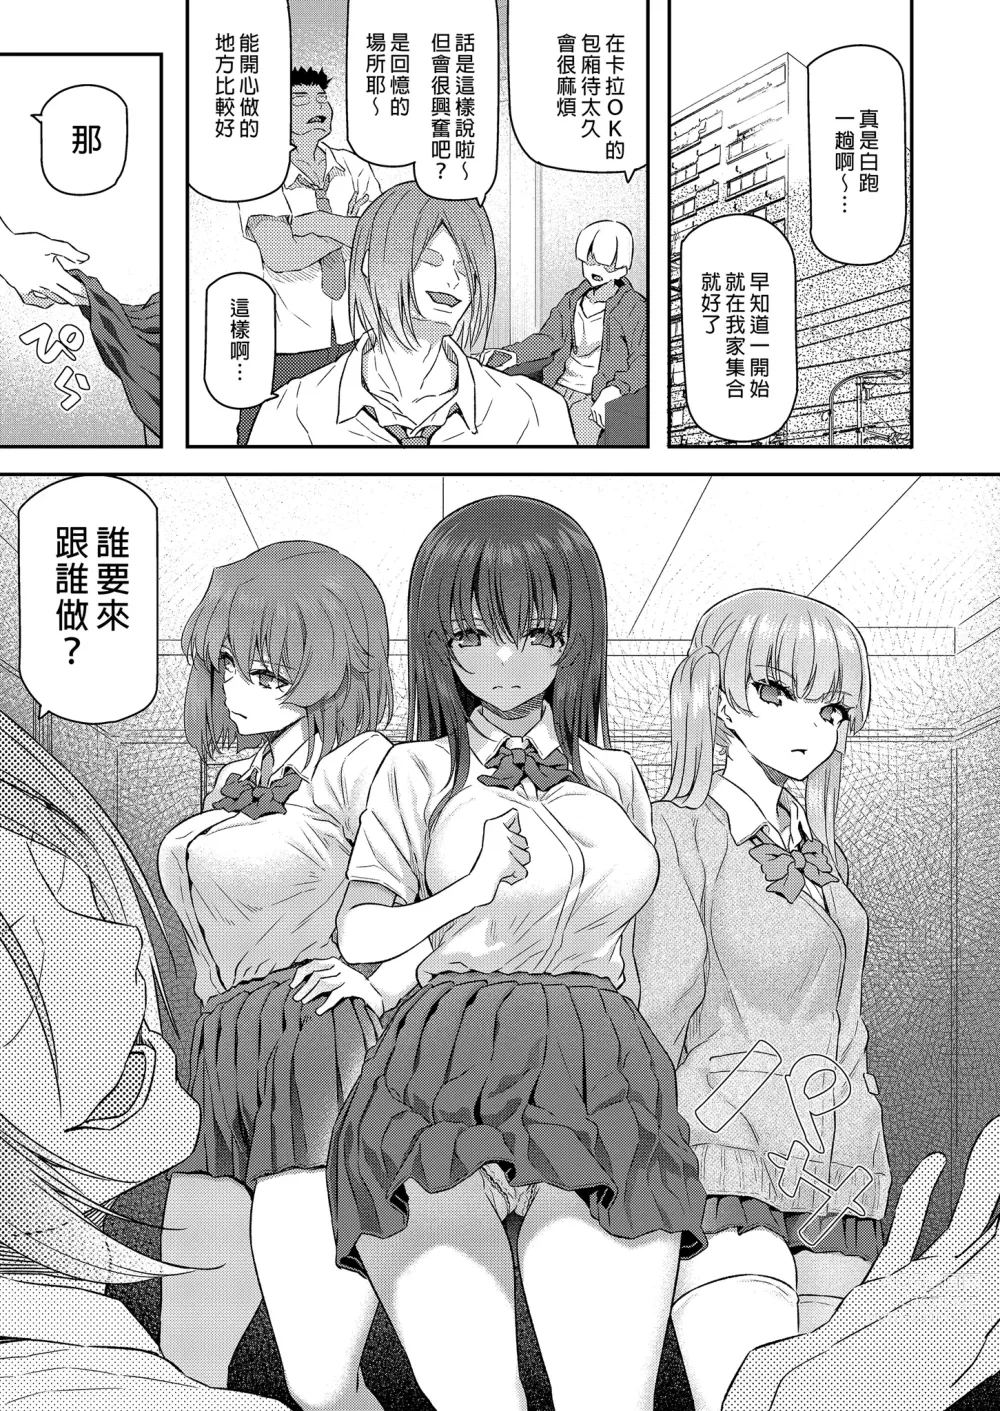 Page 3 of doujinshi Suika Yon (decensored)